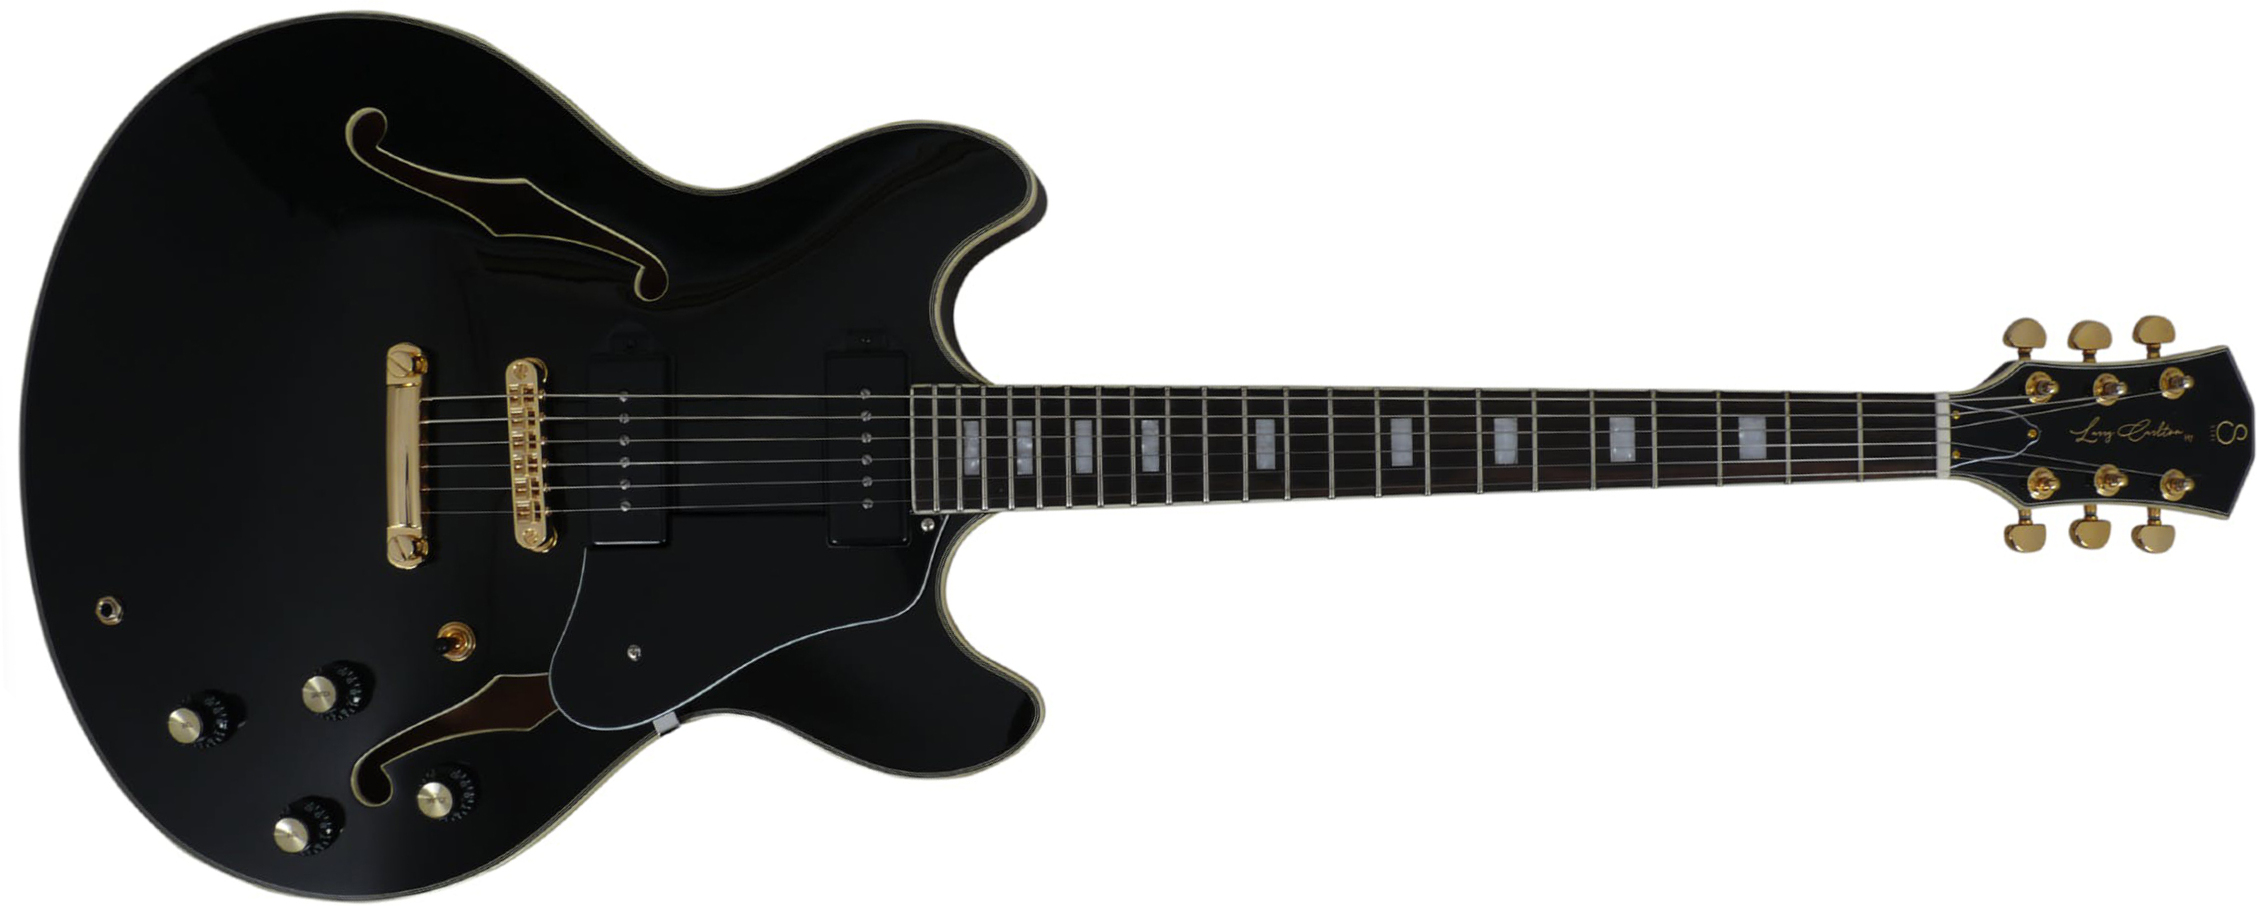 Sire Larry Carlton H7v Signature 2s P90 Ht Eb - Black - Semi hollow elektriche gitaar - Main picture